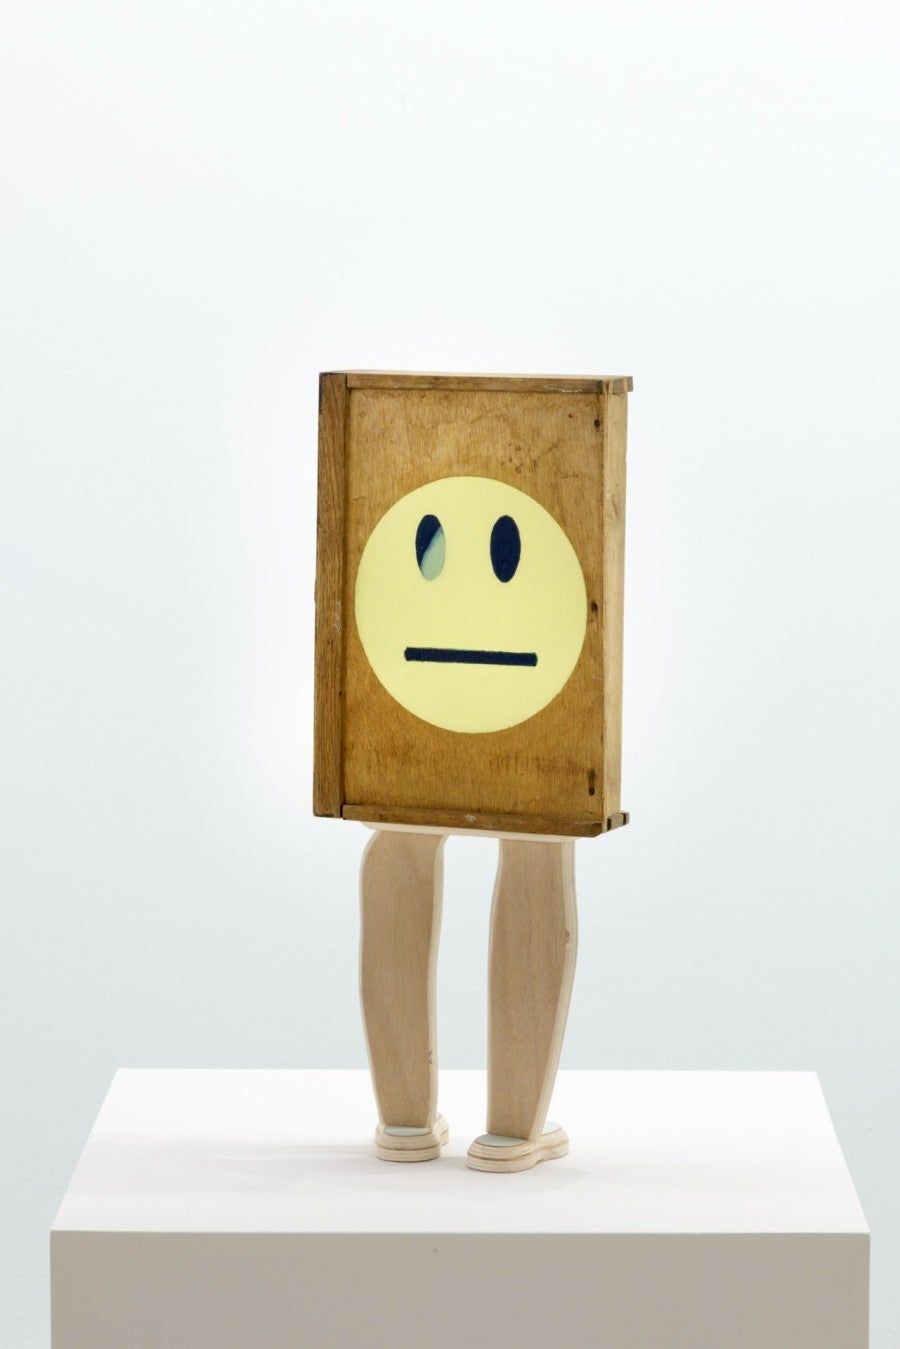 Sarah Tritz, Emoticone, 2015, objet trouvé, contreplaqué, peinture acrylique, toile de lin, 60 x 25 x 10 cm. Photo : Florian Kleinefenn